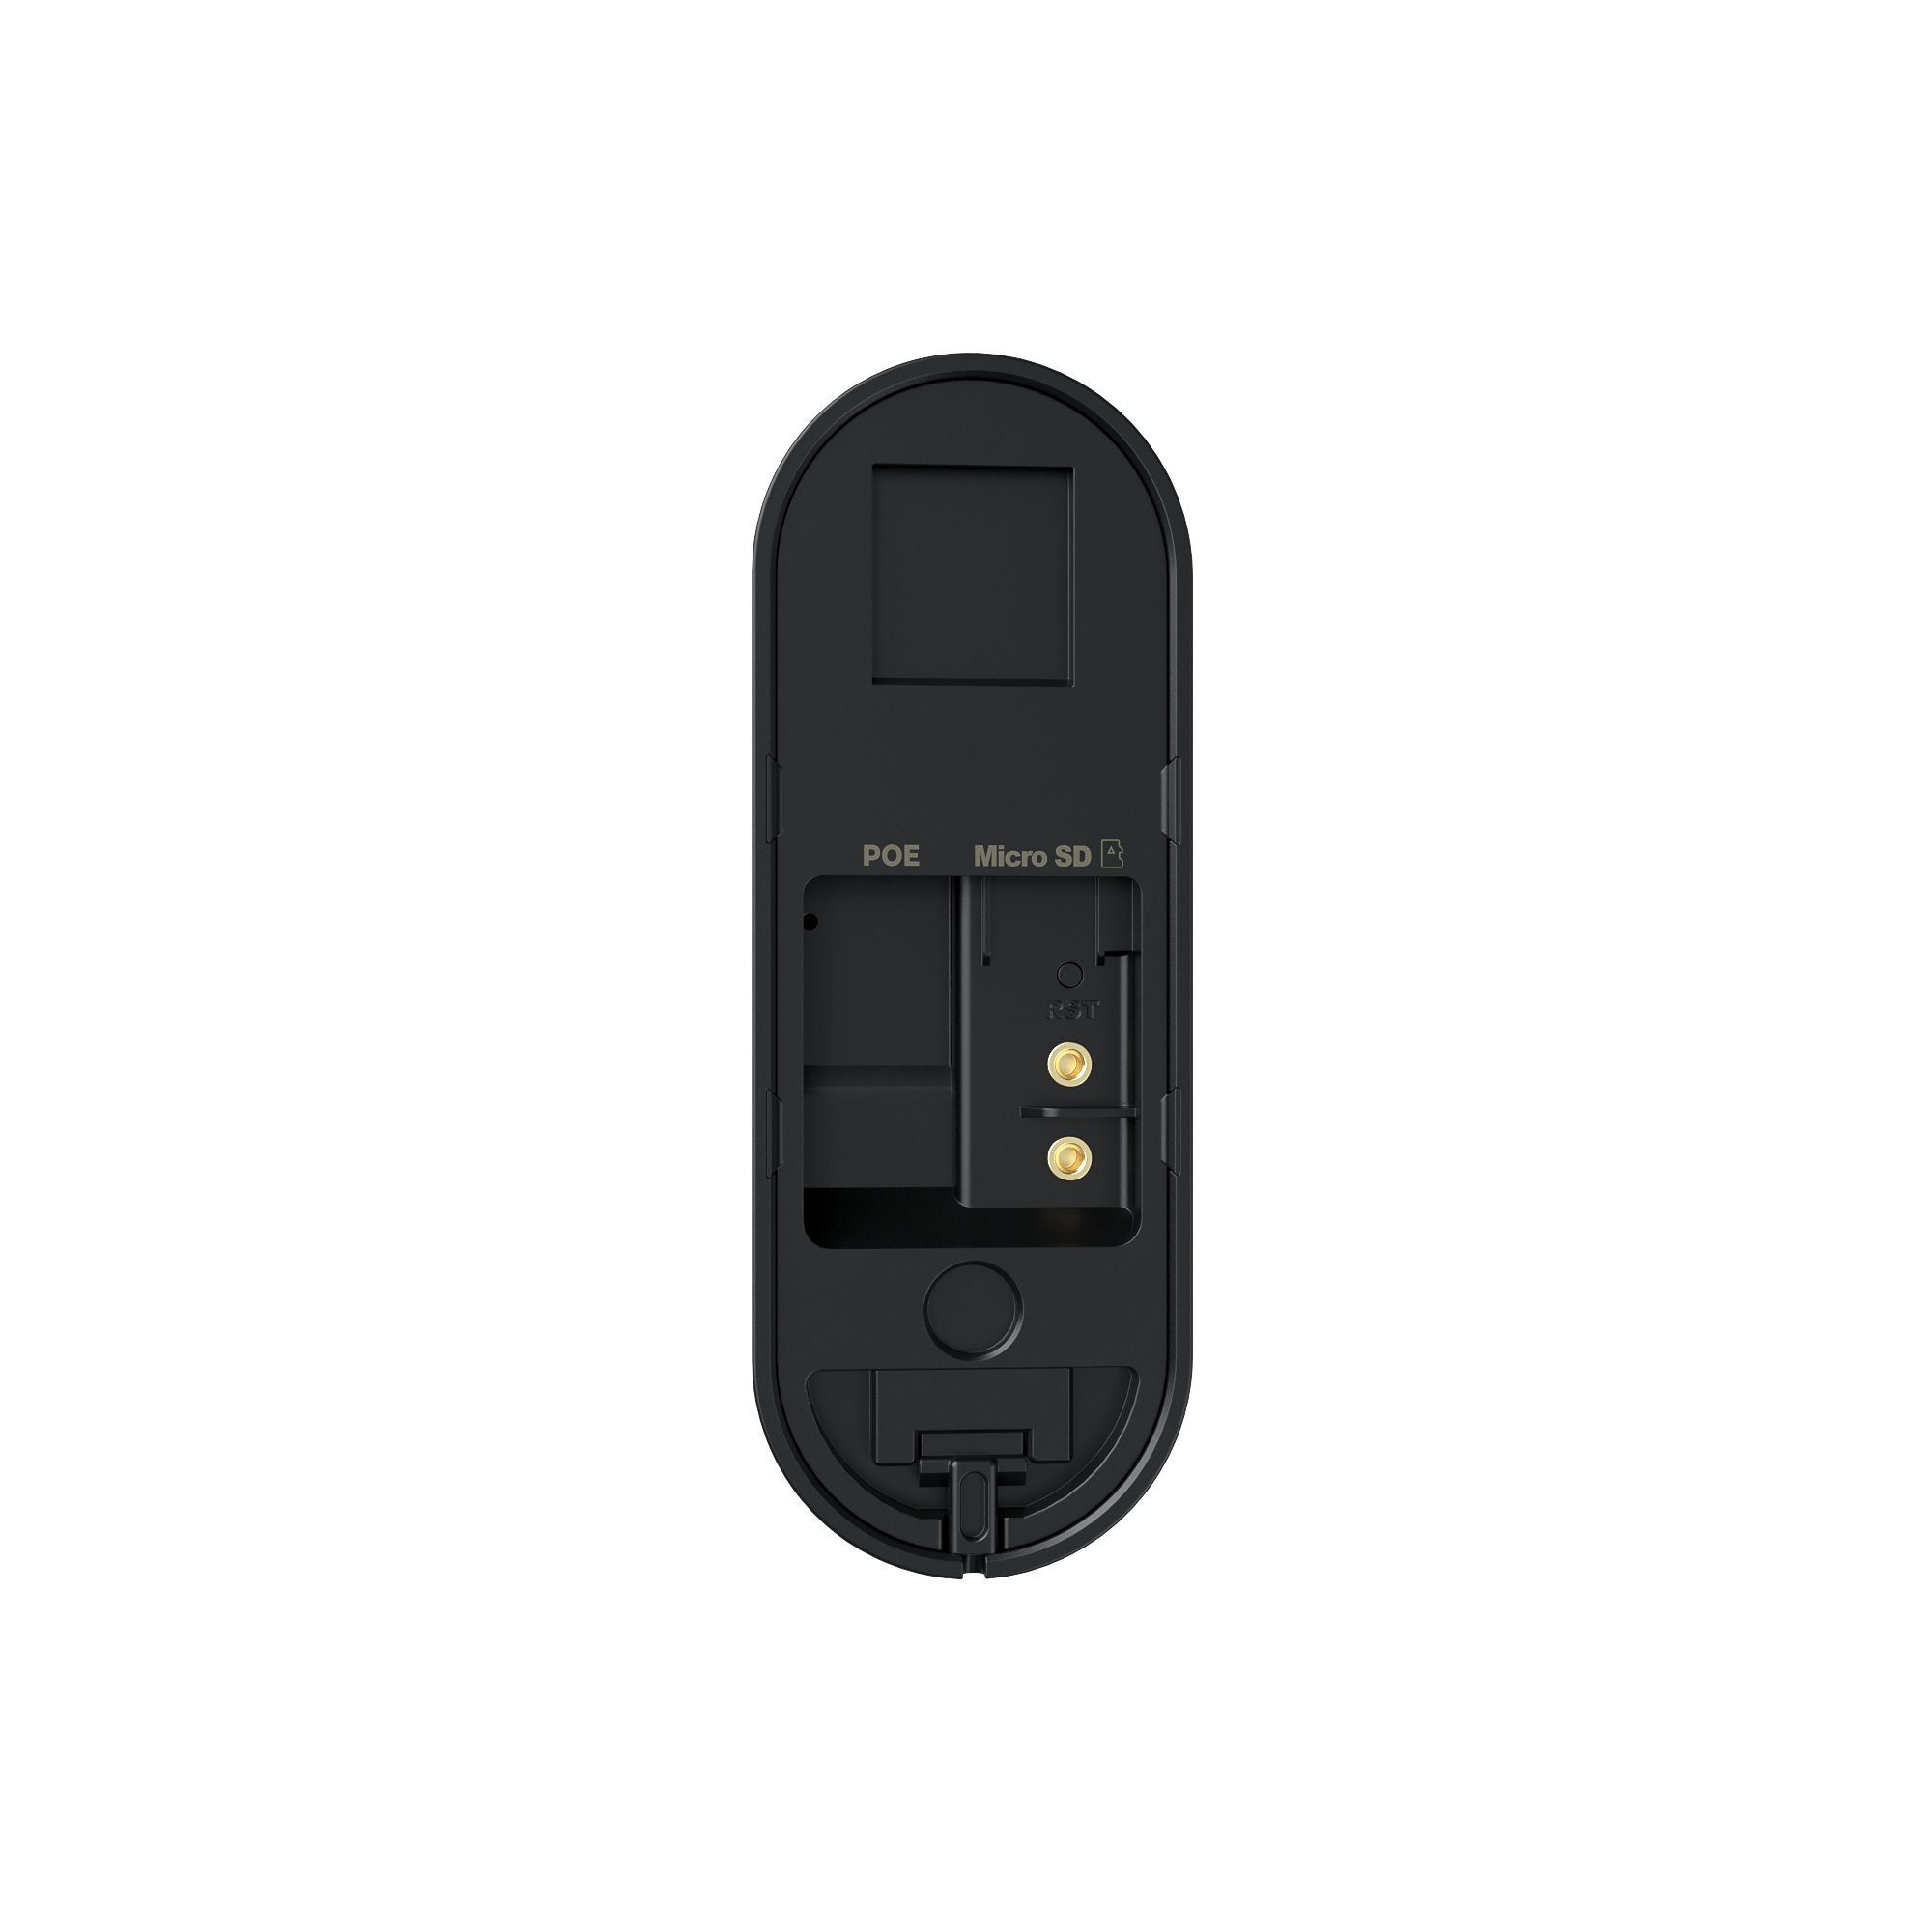 Video Home Wetterschutz, (Außenbereich, VD81 Wetterschutz) Reolink IP65 Doorbell Kamera Smart 5MP Gegensprechfunktion, Türklingel IP65 PoE-Version Innenbereich,